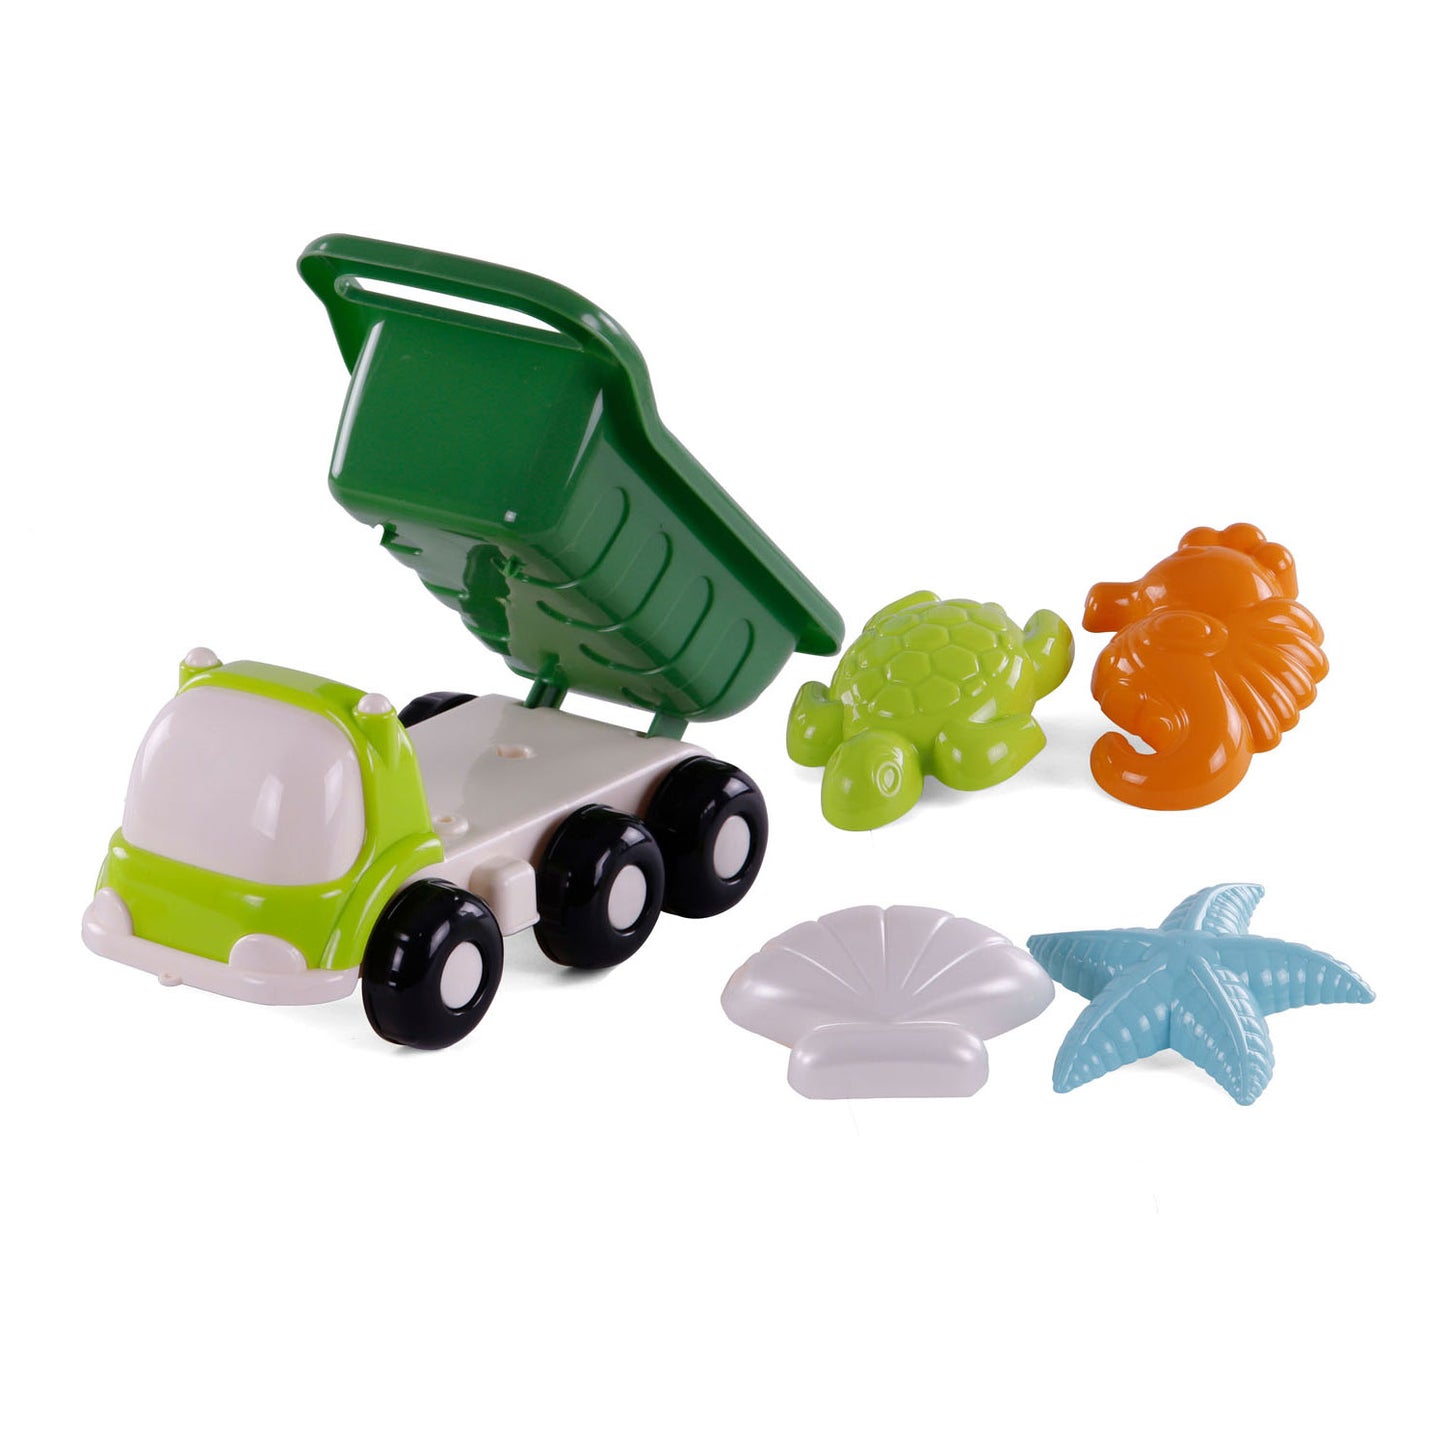 Cavallino Toys Cavallino Beach Kiepwagen con 4 formas de arena verde